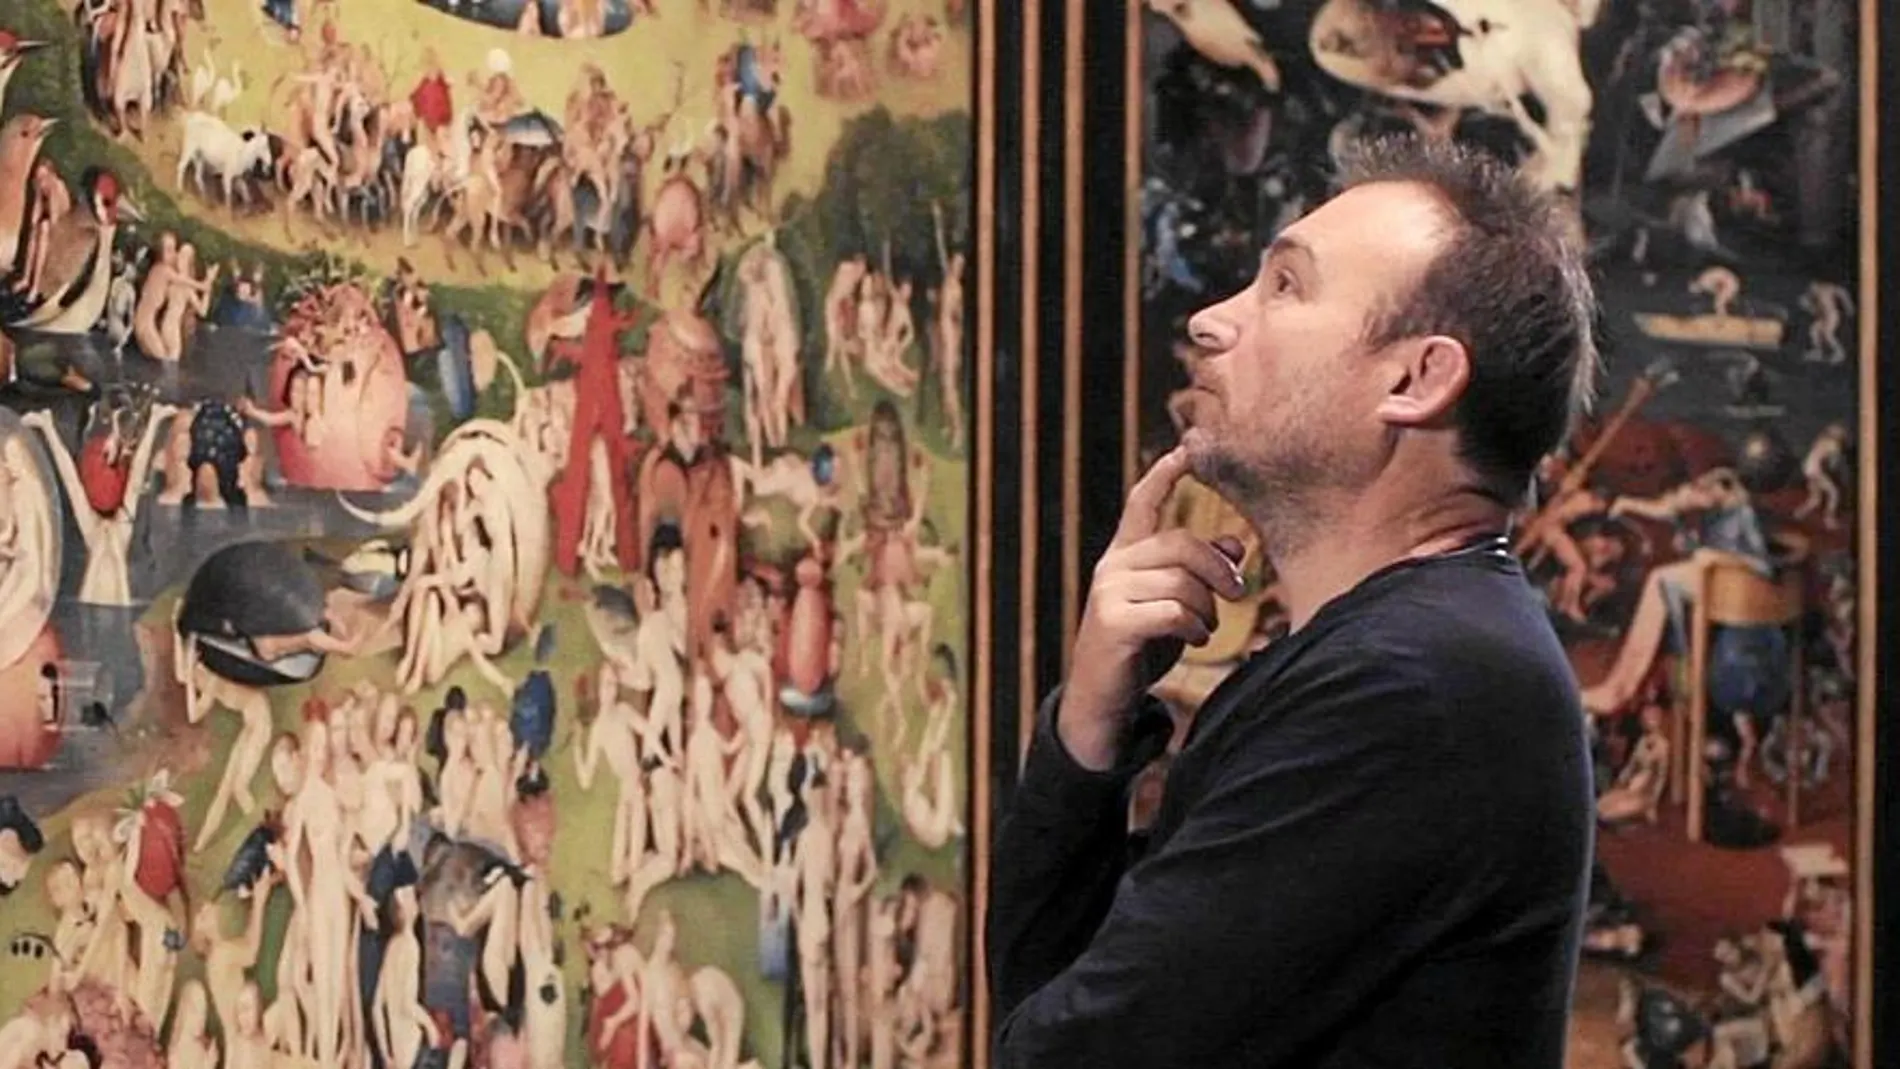 El pintor Miquel Barceló, pensativo, frente al tríptico de El Bosco, una joya de la historia de la pintura que plantea mil y un interrogantes